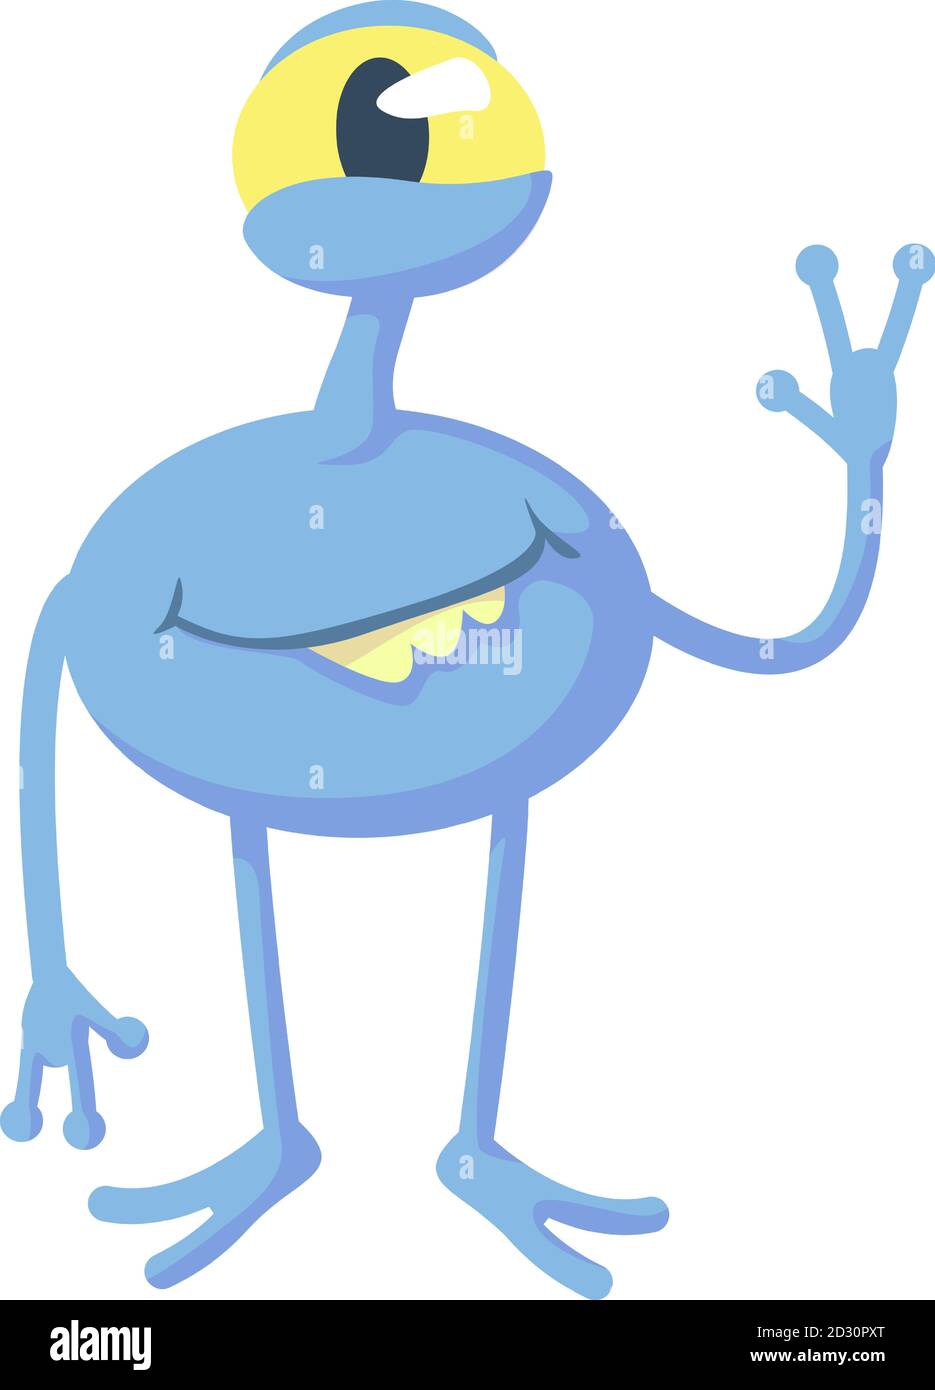 Illustrazione vettoriale di un fumetto alieno blu sorridente. Cute extraterrestre, creatura fantastica. Modello di caratteri 2d pronto all'uso per uso commerciale Illustrazione Vettoriale